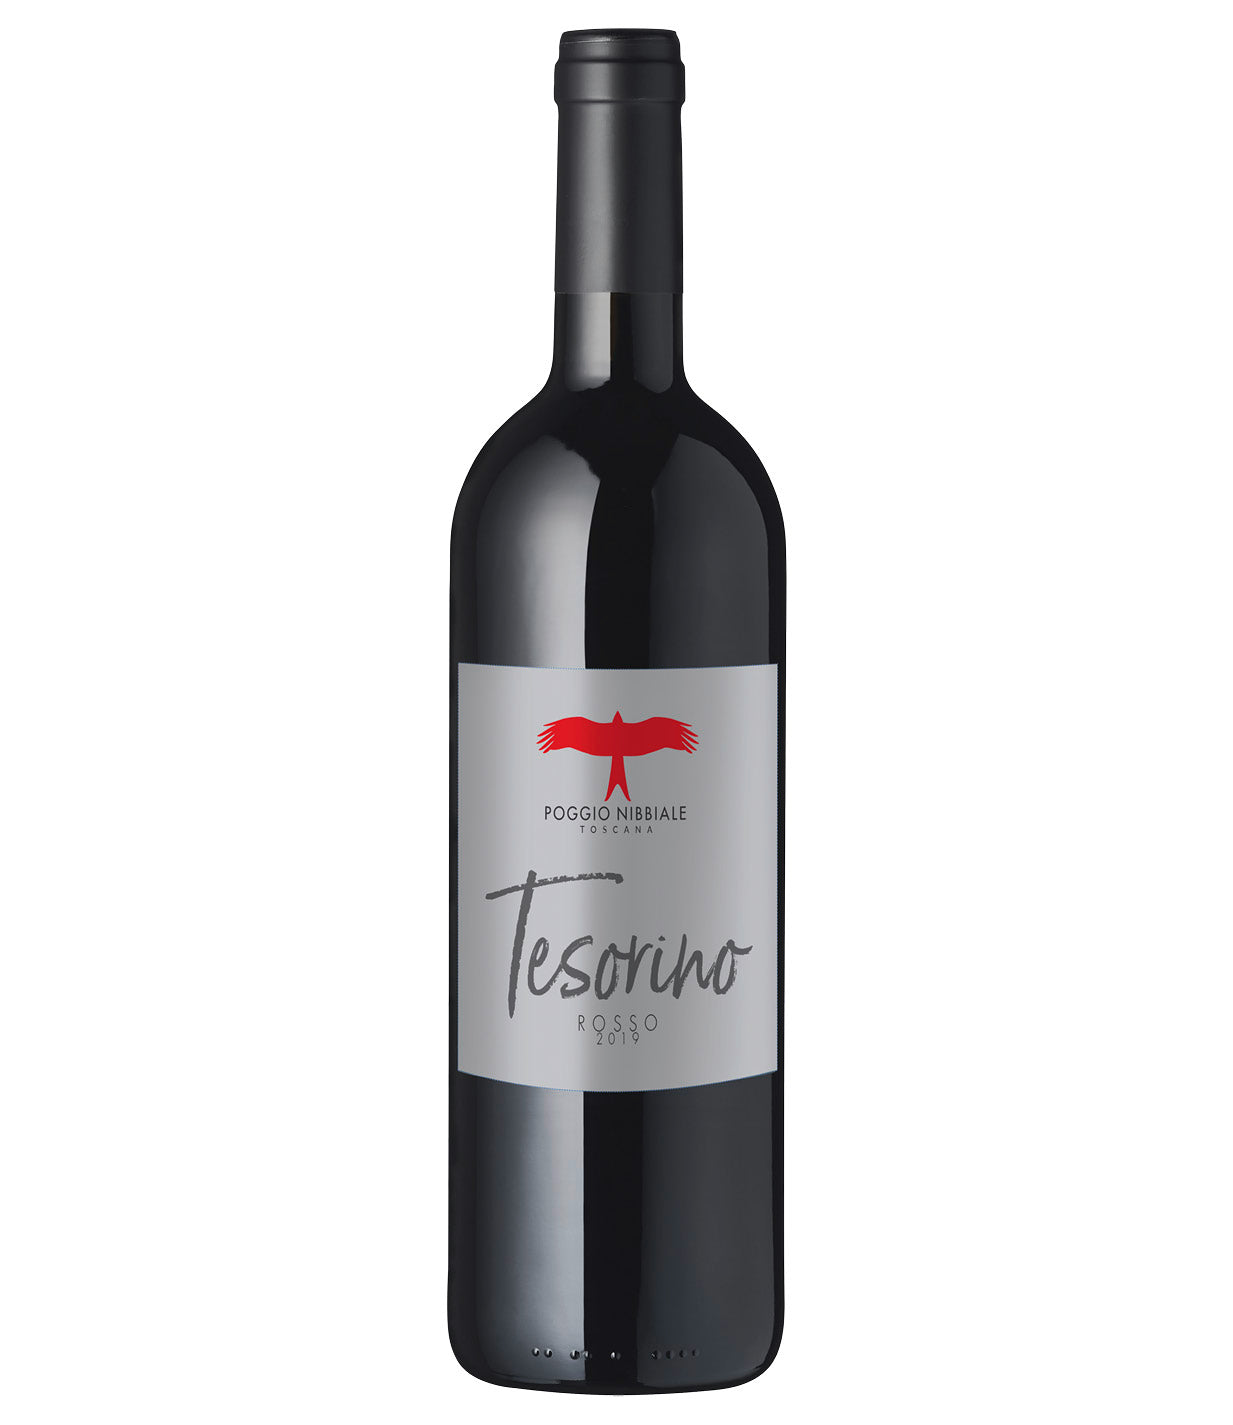 2019 „Tesorino“ Toscana Rosso IGT